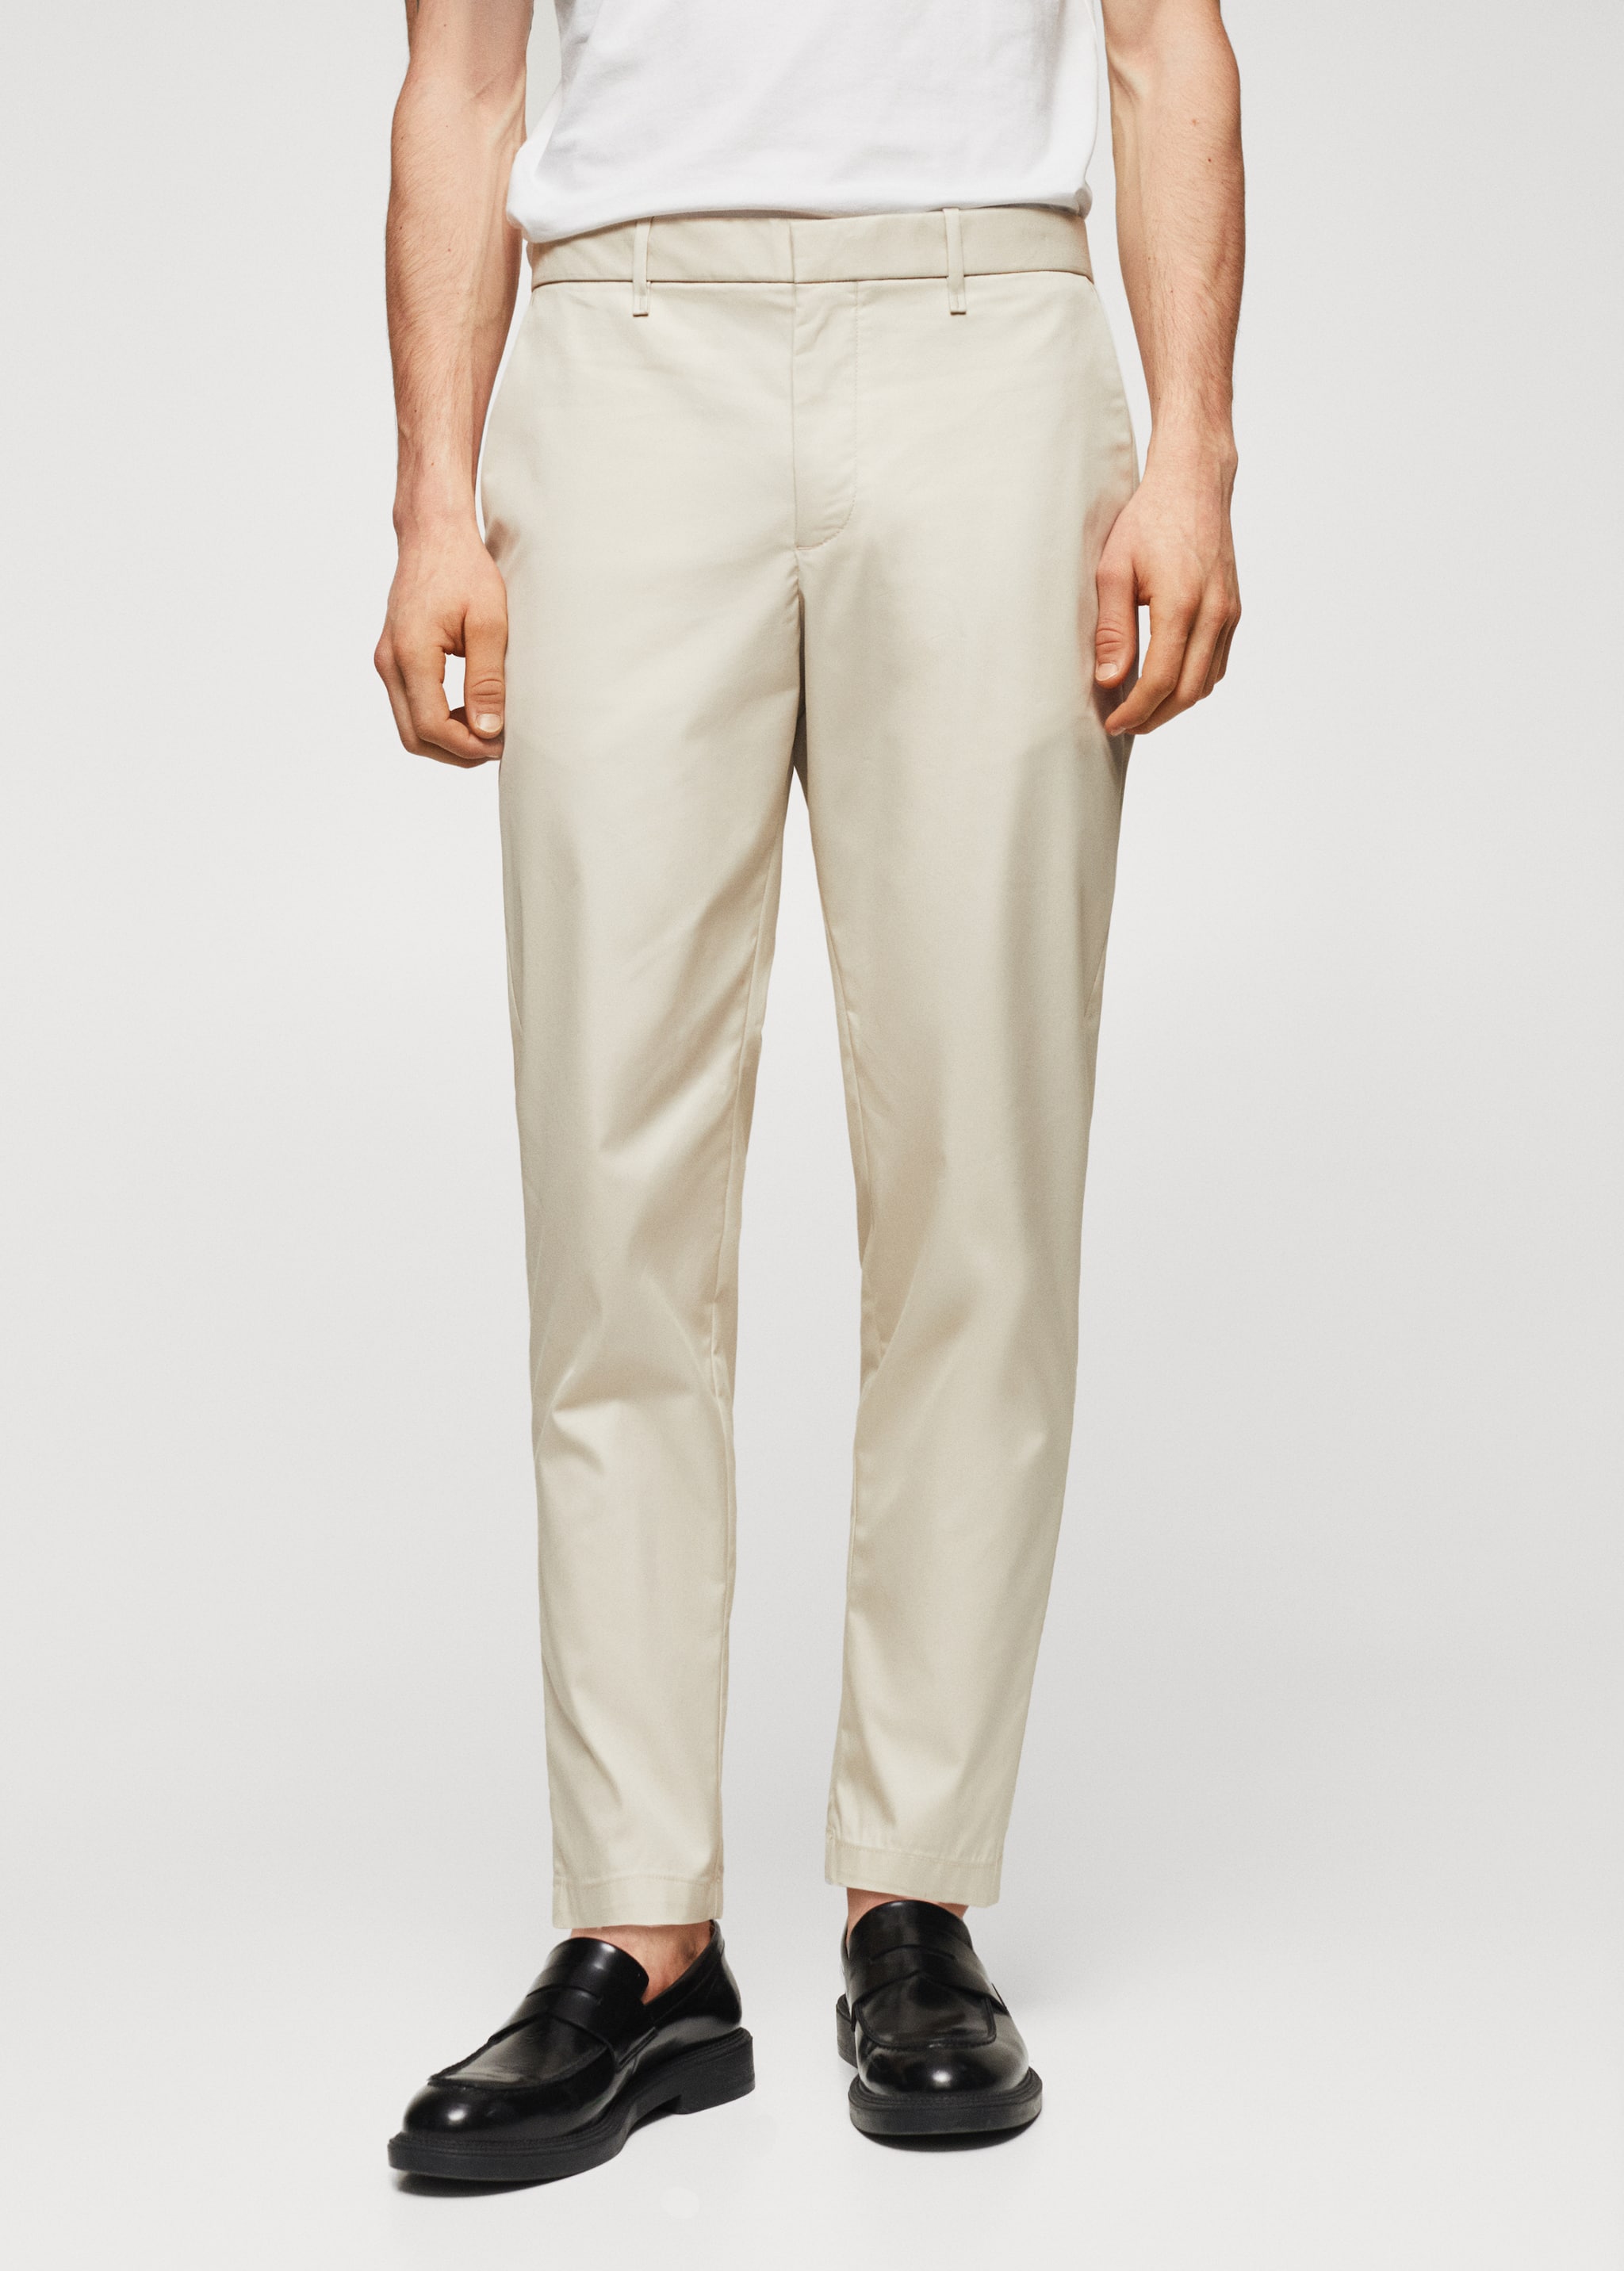 Bavlněné kalhoty slim fit - Náhled ve středové rovině